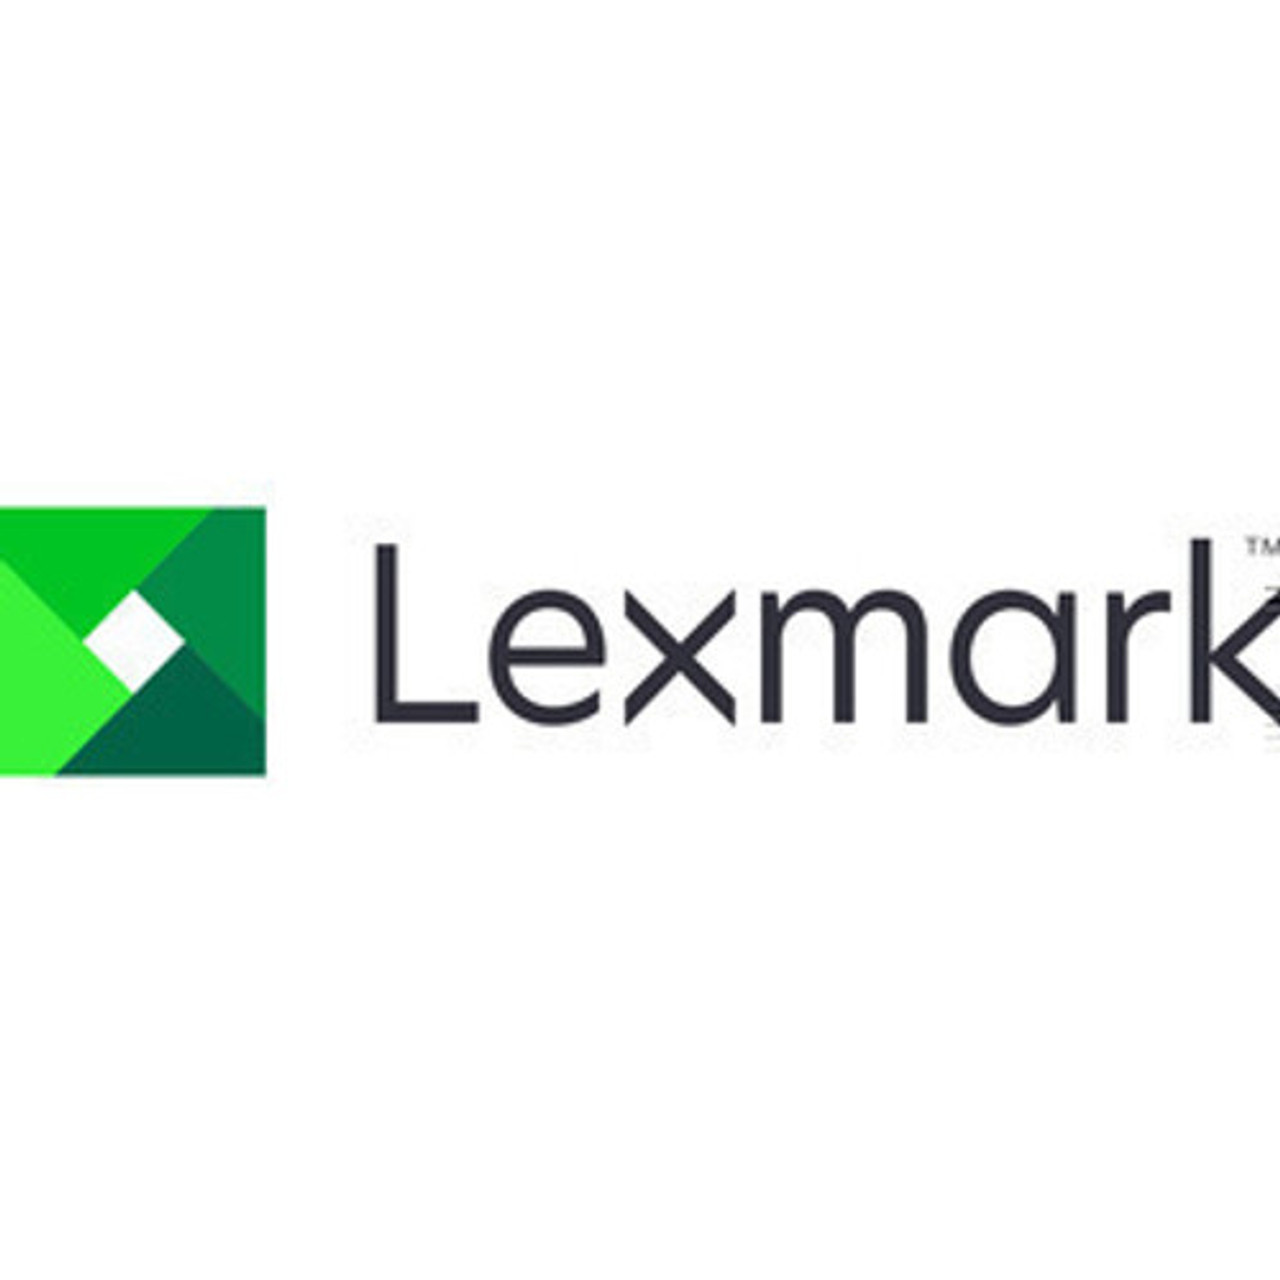 Lexmark CX522 2 YR Onsite Repair Renewal - 2365597